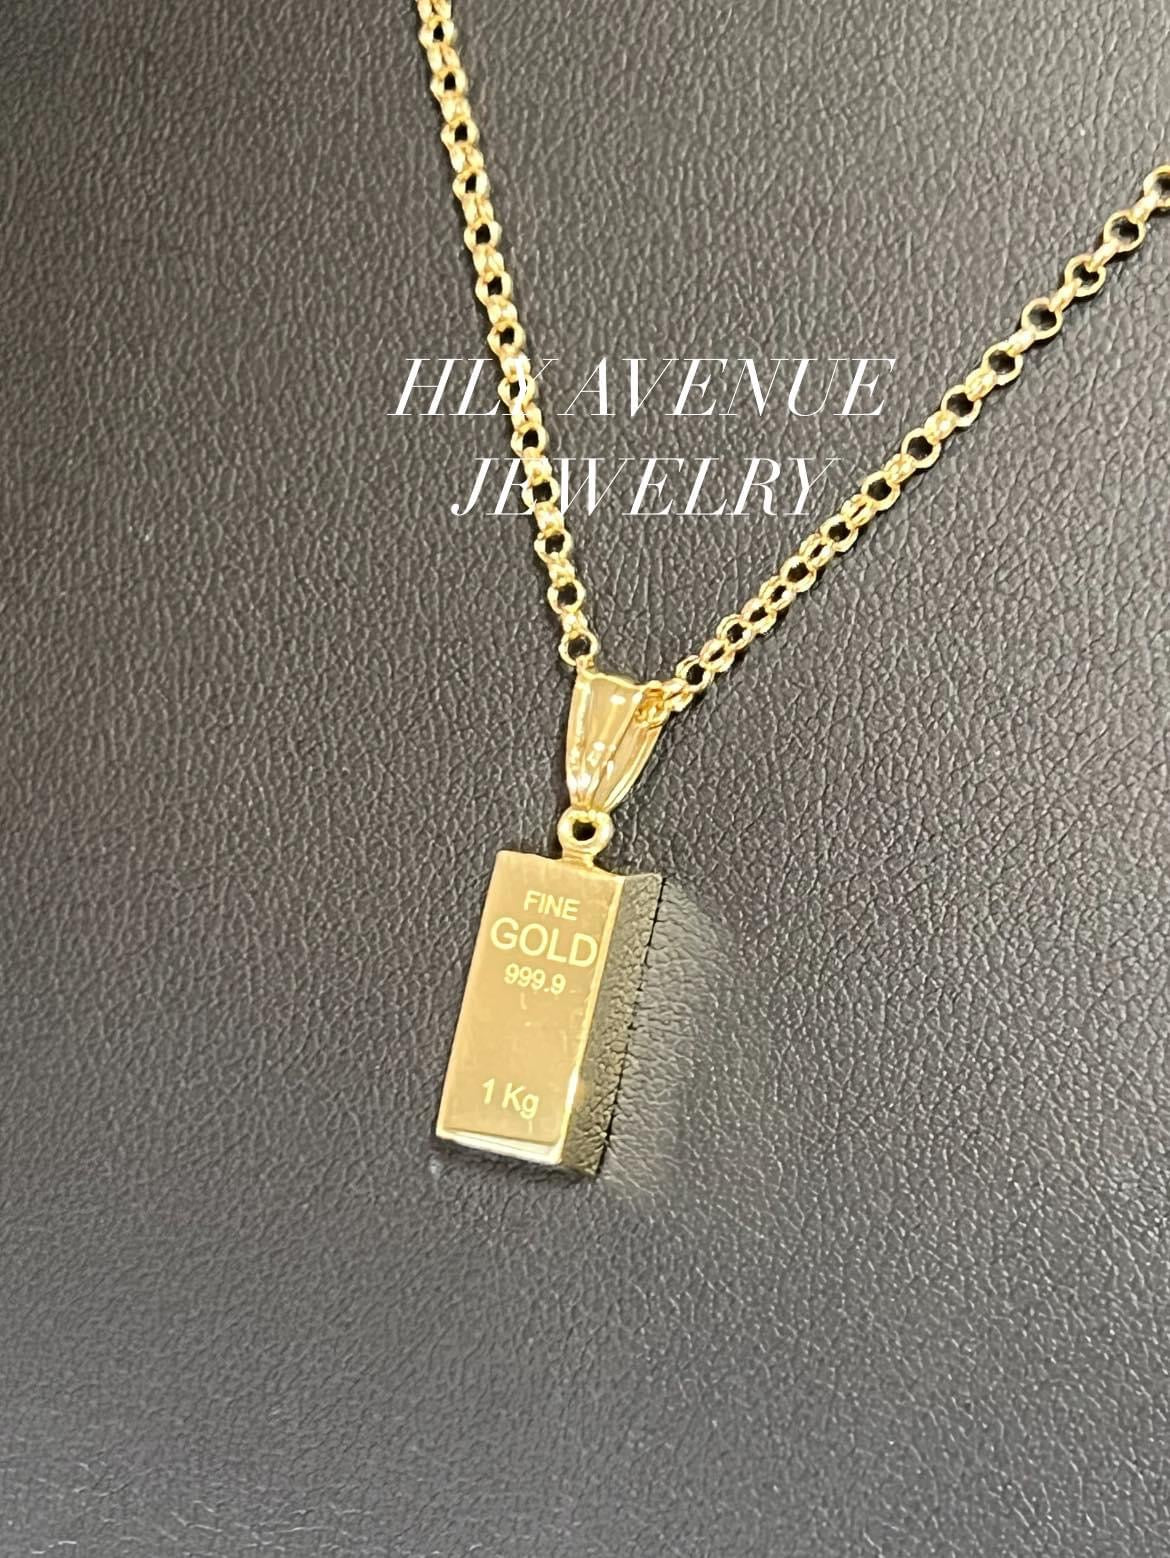 18k Japan Gold Bar Necklace 45CM